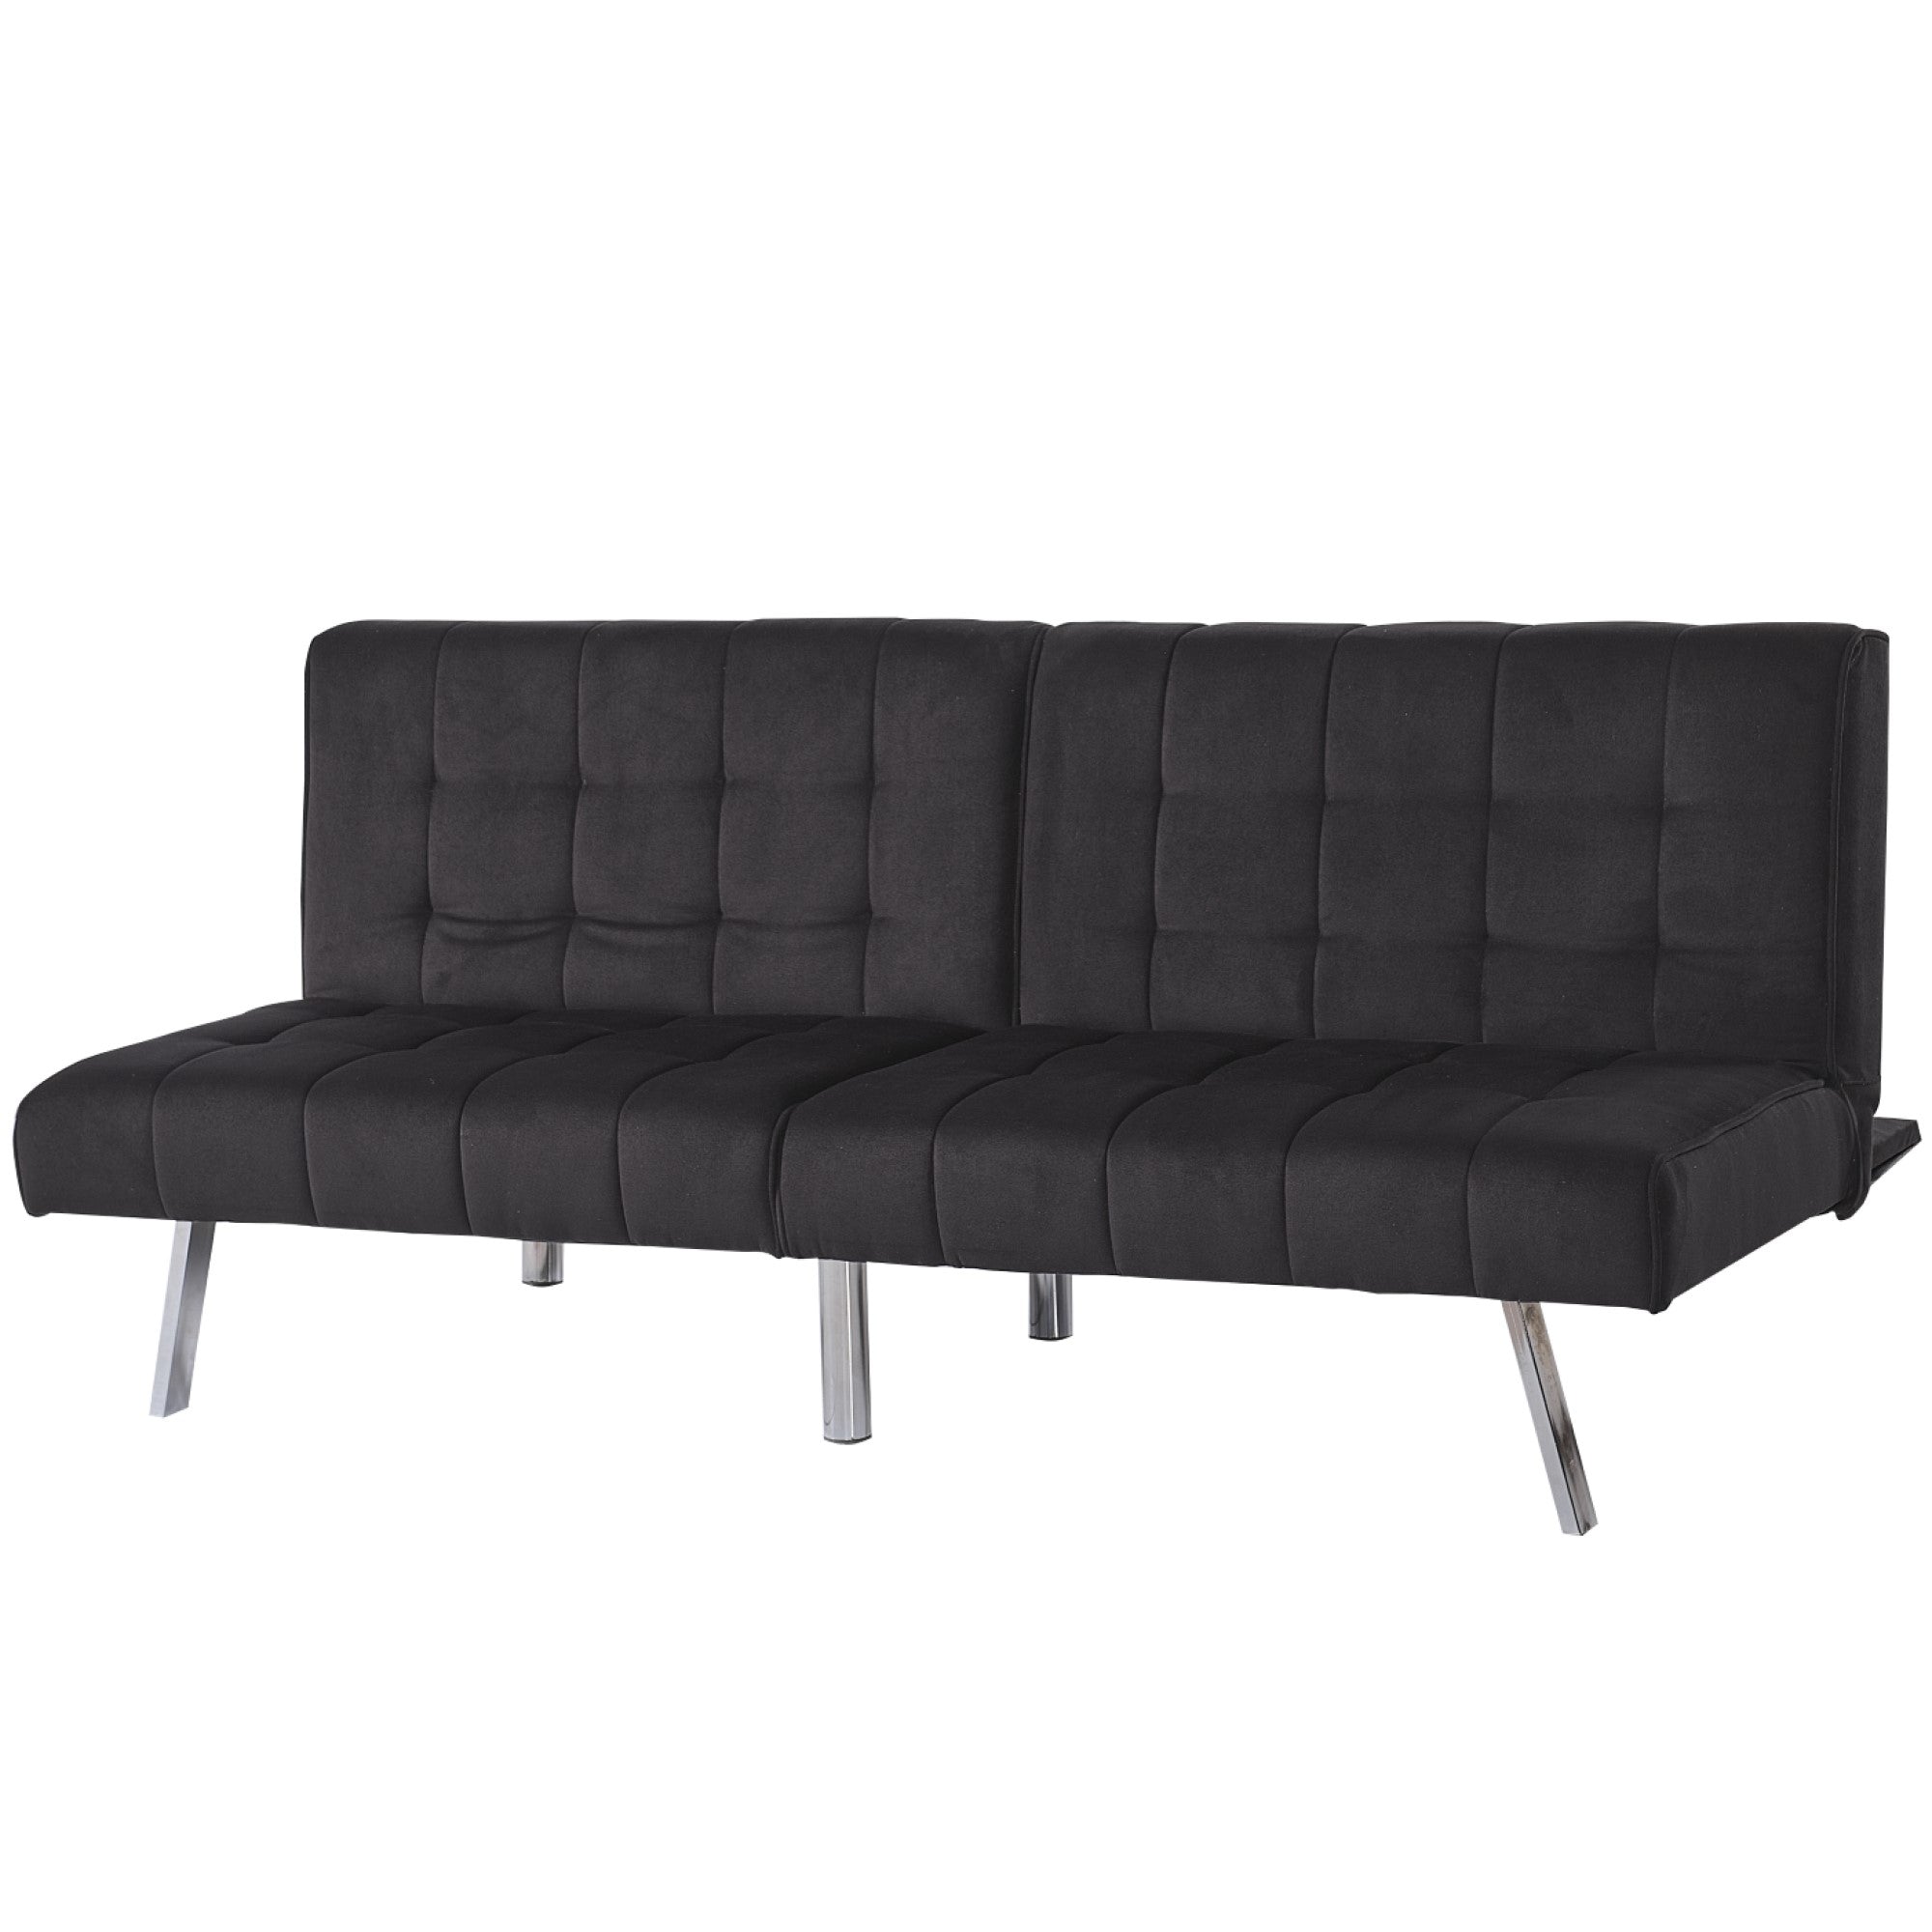 ViscoLogic Rhythm Convertible 3-Seater Velvet Upholstered Living Room Futon Sofa/Sofa Bed